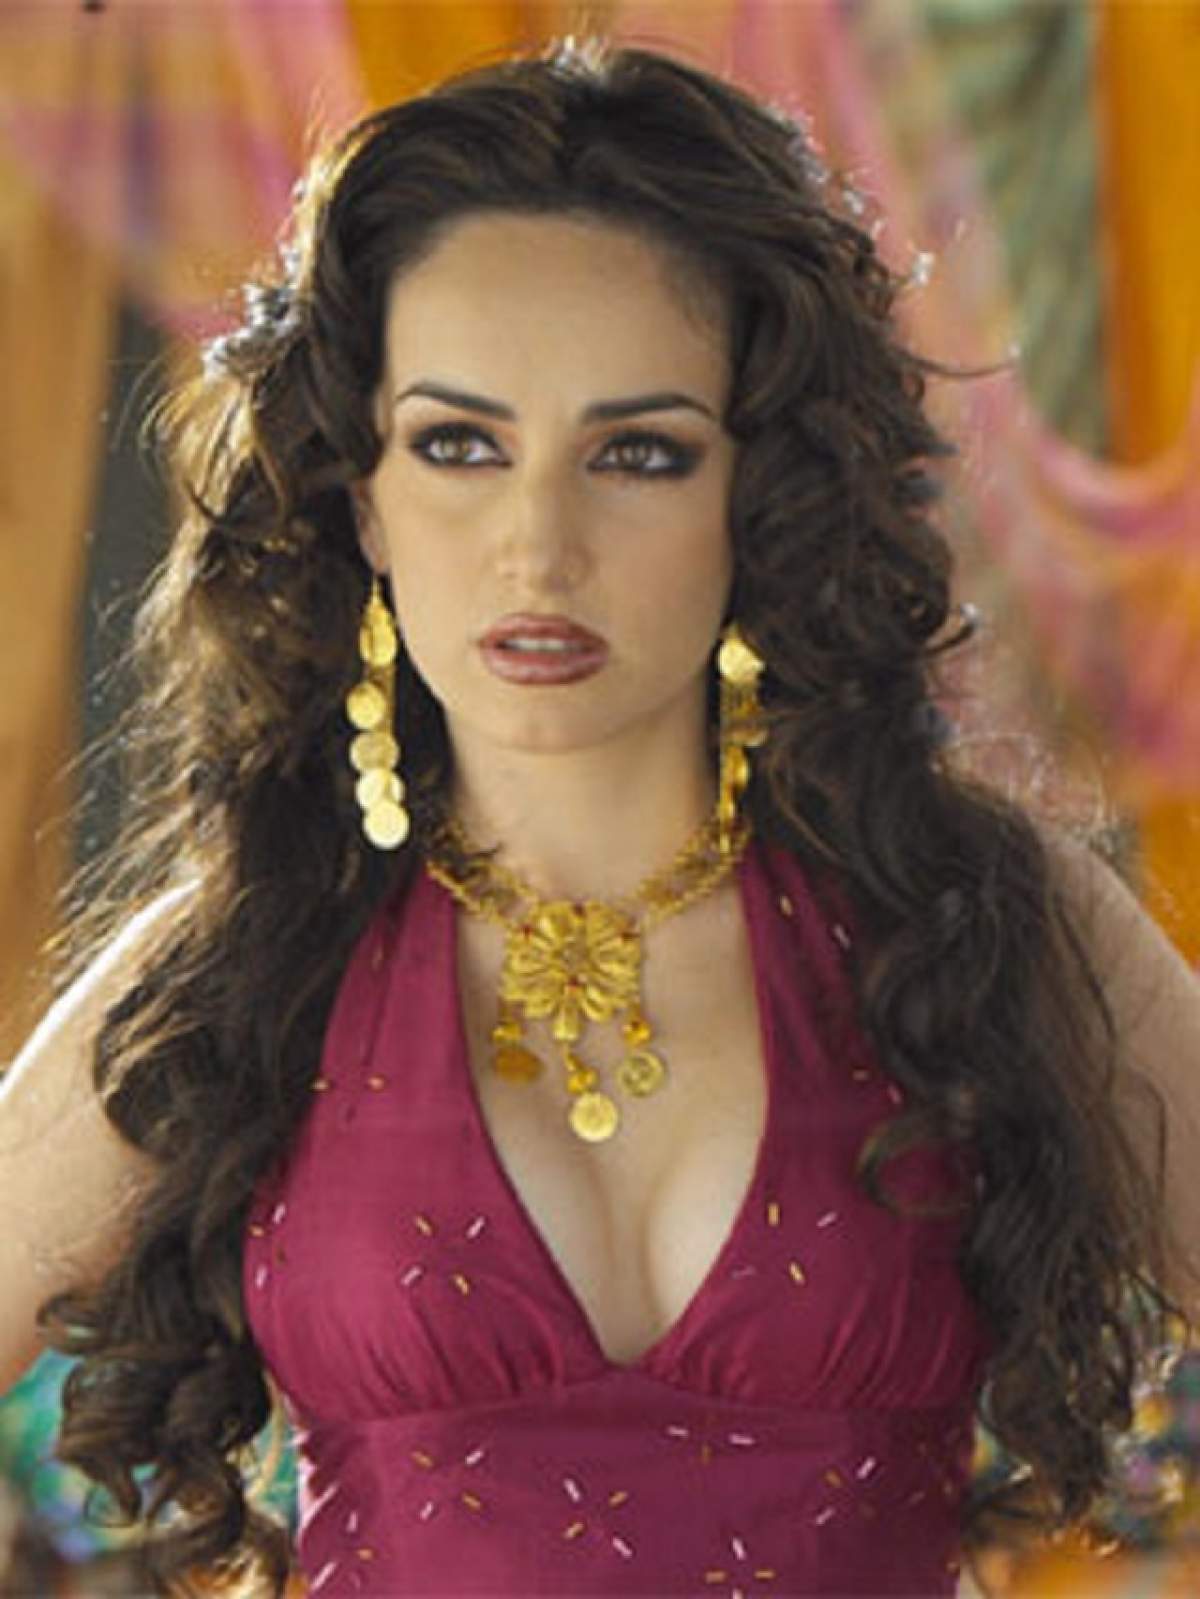 FOTO / Ţi-o mai aminteşti pe Ana de la Reguera din telenovela "Gitanas"? Cum arată nemachiată la 38 de ani